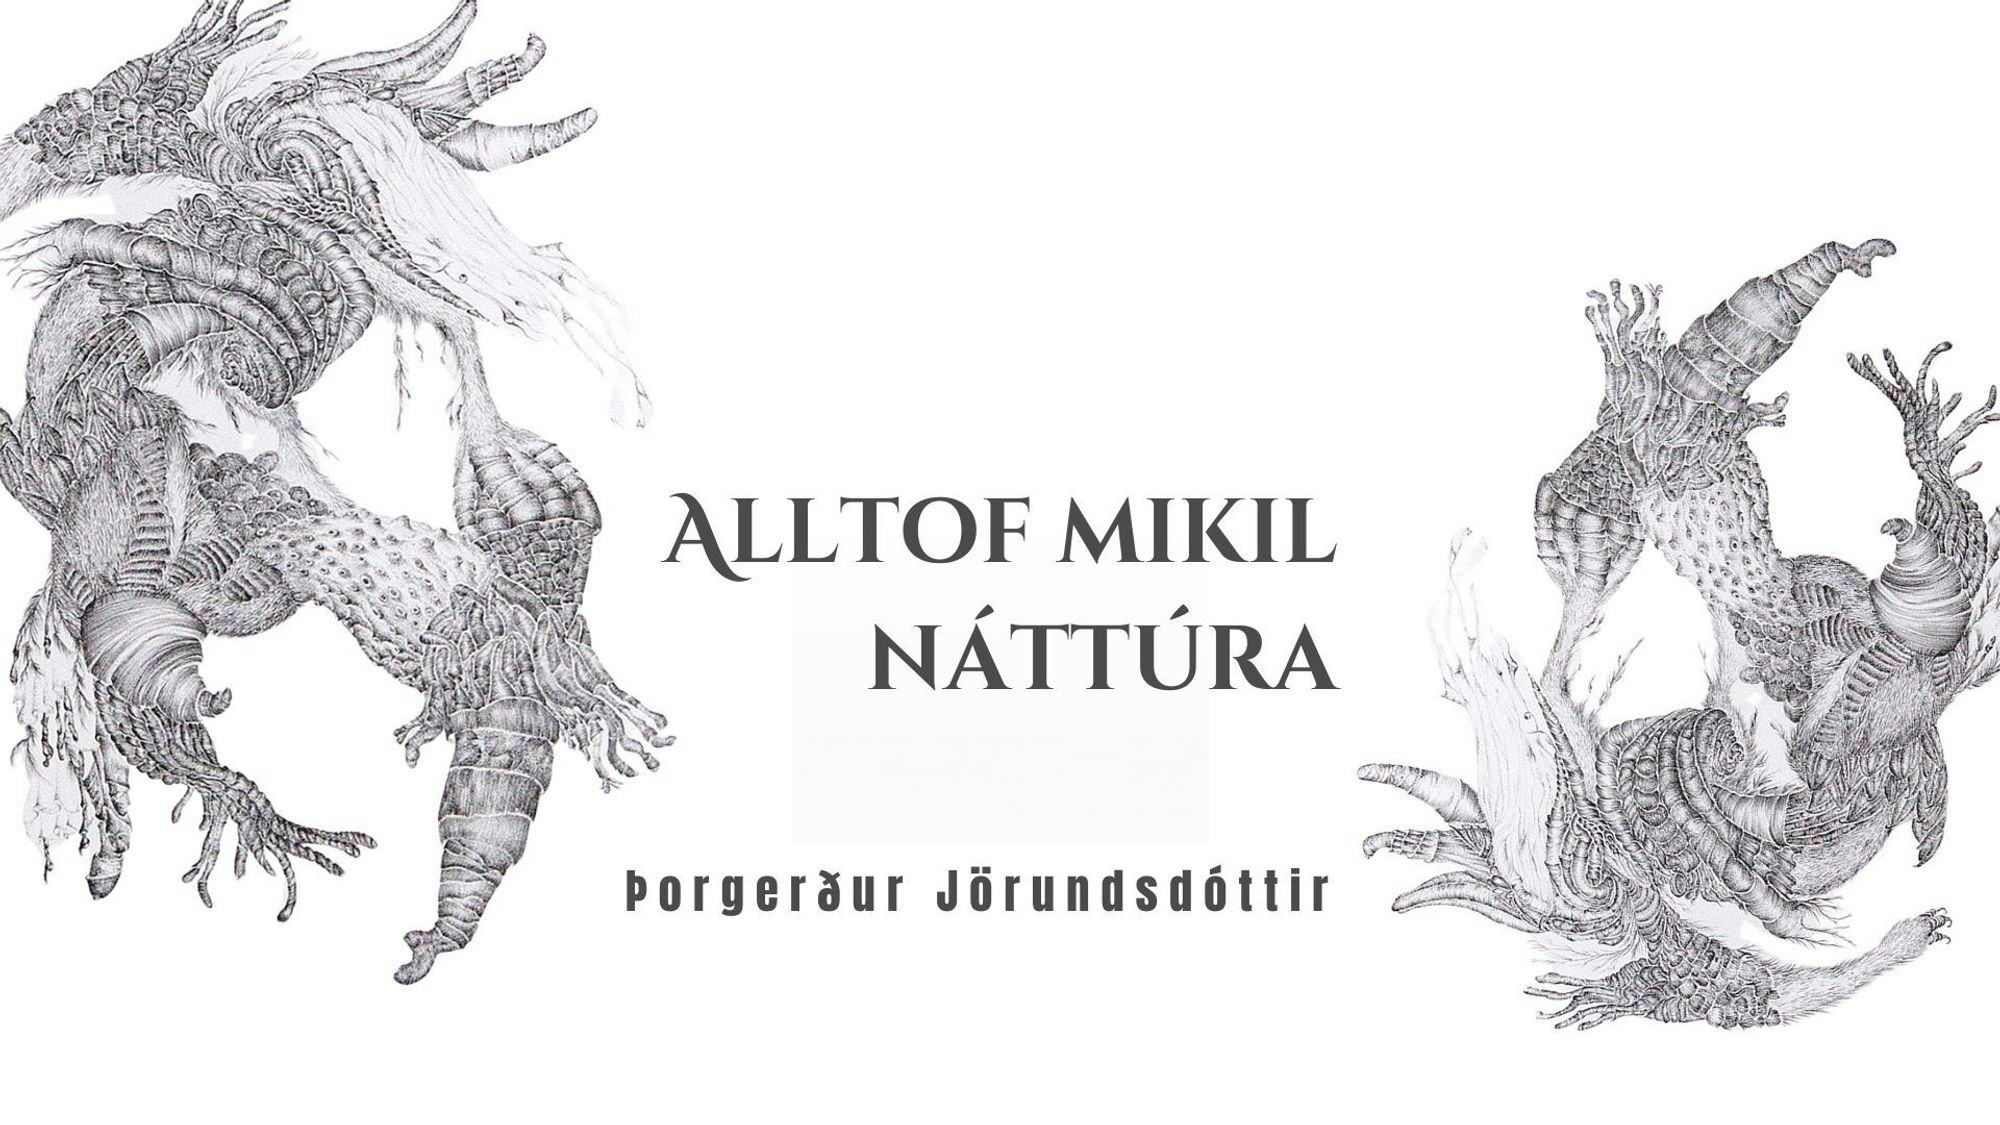 Þorgerður Jörundsdóttir